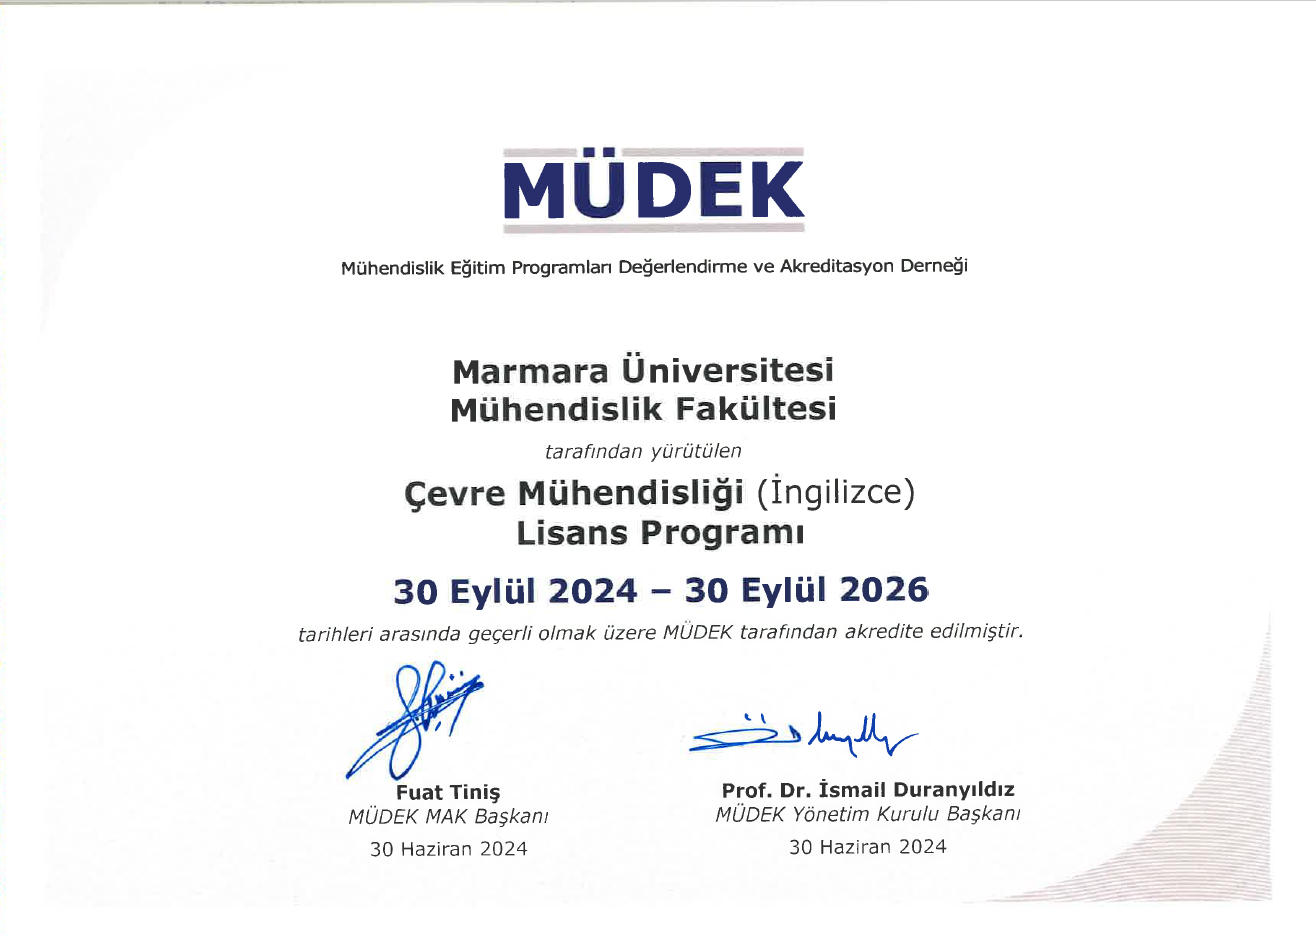 mudek_2.png (267 KB)